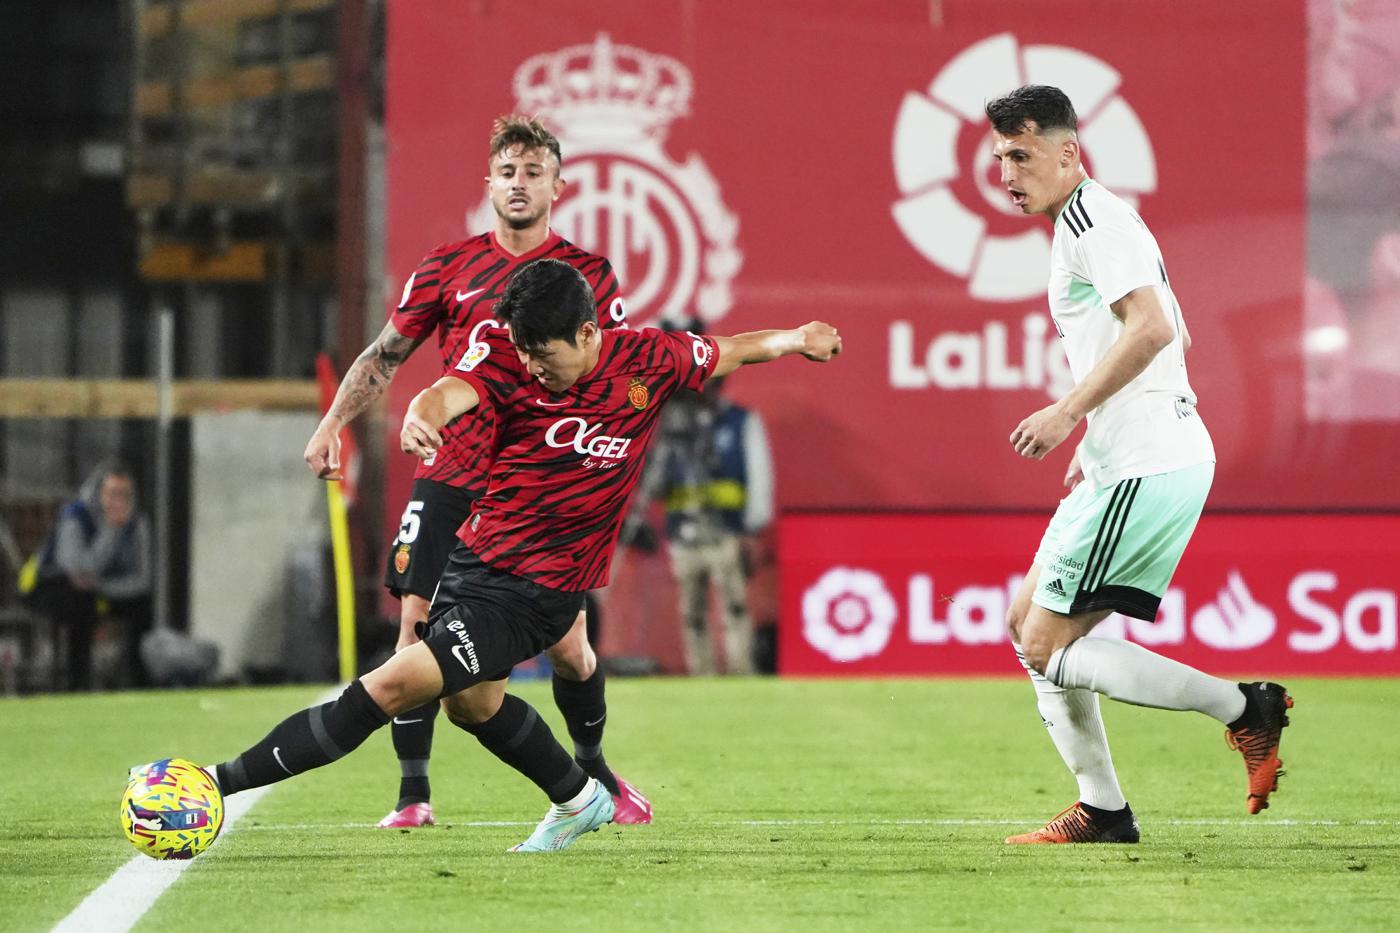 Mallorca - Osasuna - 0:0. Spanische Meisterschaft, 27. Runde. Spielbericht, Statistiken